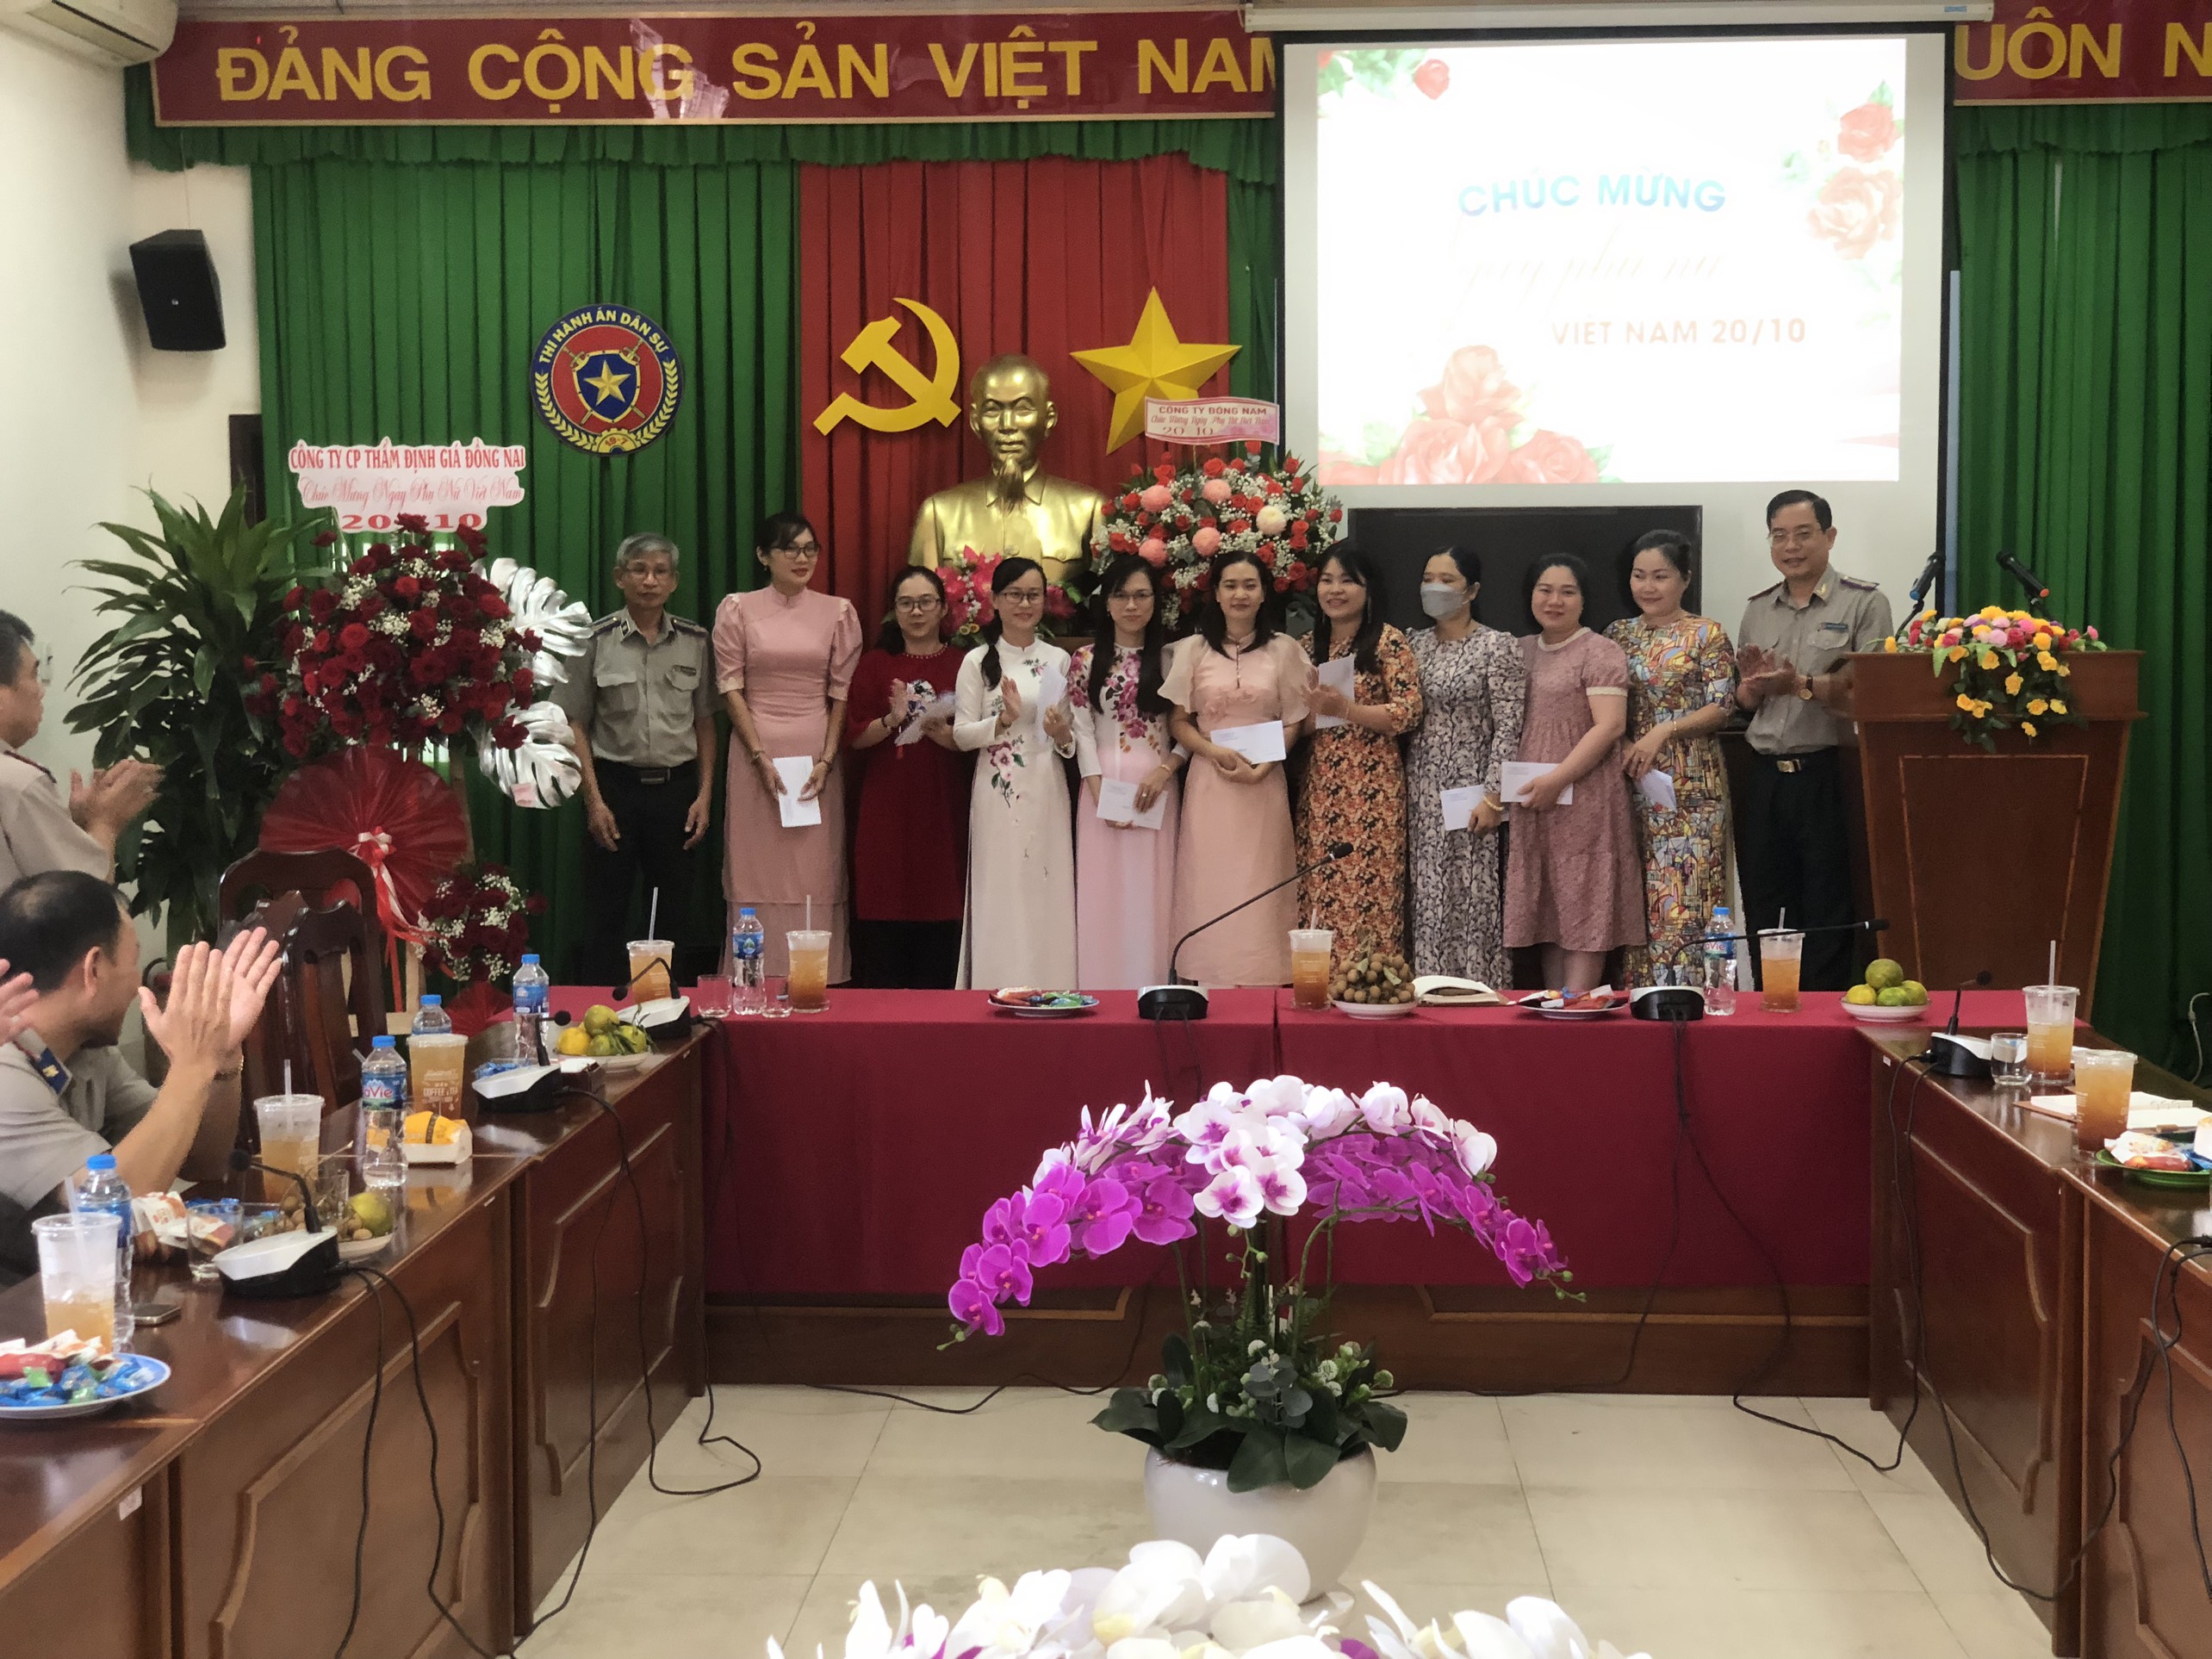 Cục Thi hành án dân sự tỉnh long trọng tổ chức họp mặt, gặp gỡ, giao lưu với các chị em phụ nữ cơ quan nhân Kỷ niệm 93 năm Ngày thành lập Hội liên hiệp Phụ nữ Việt Nam (20/10/1930 - 20/10/2023)